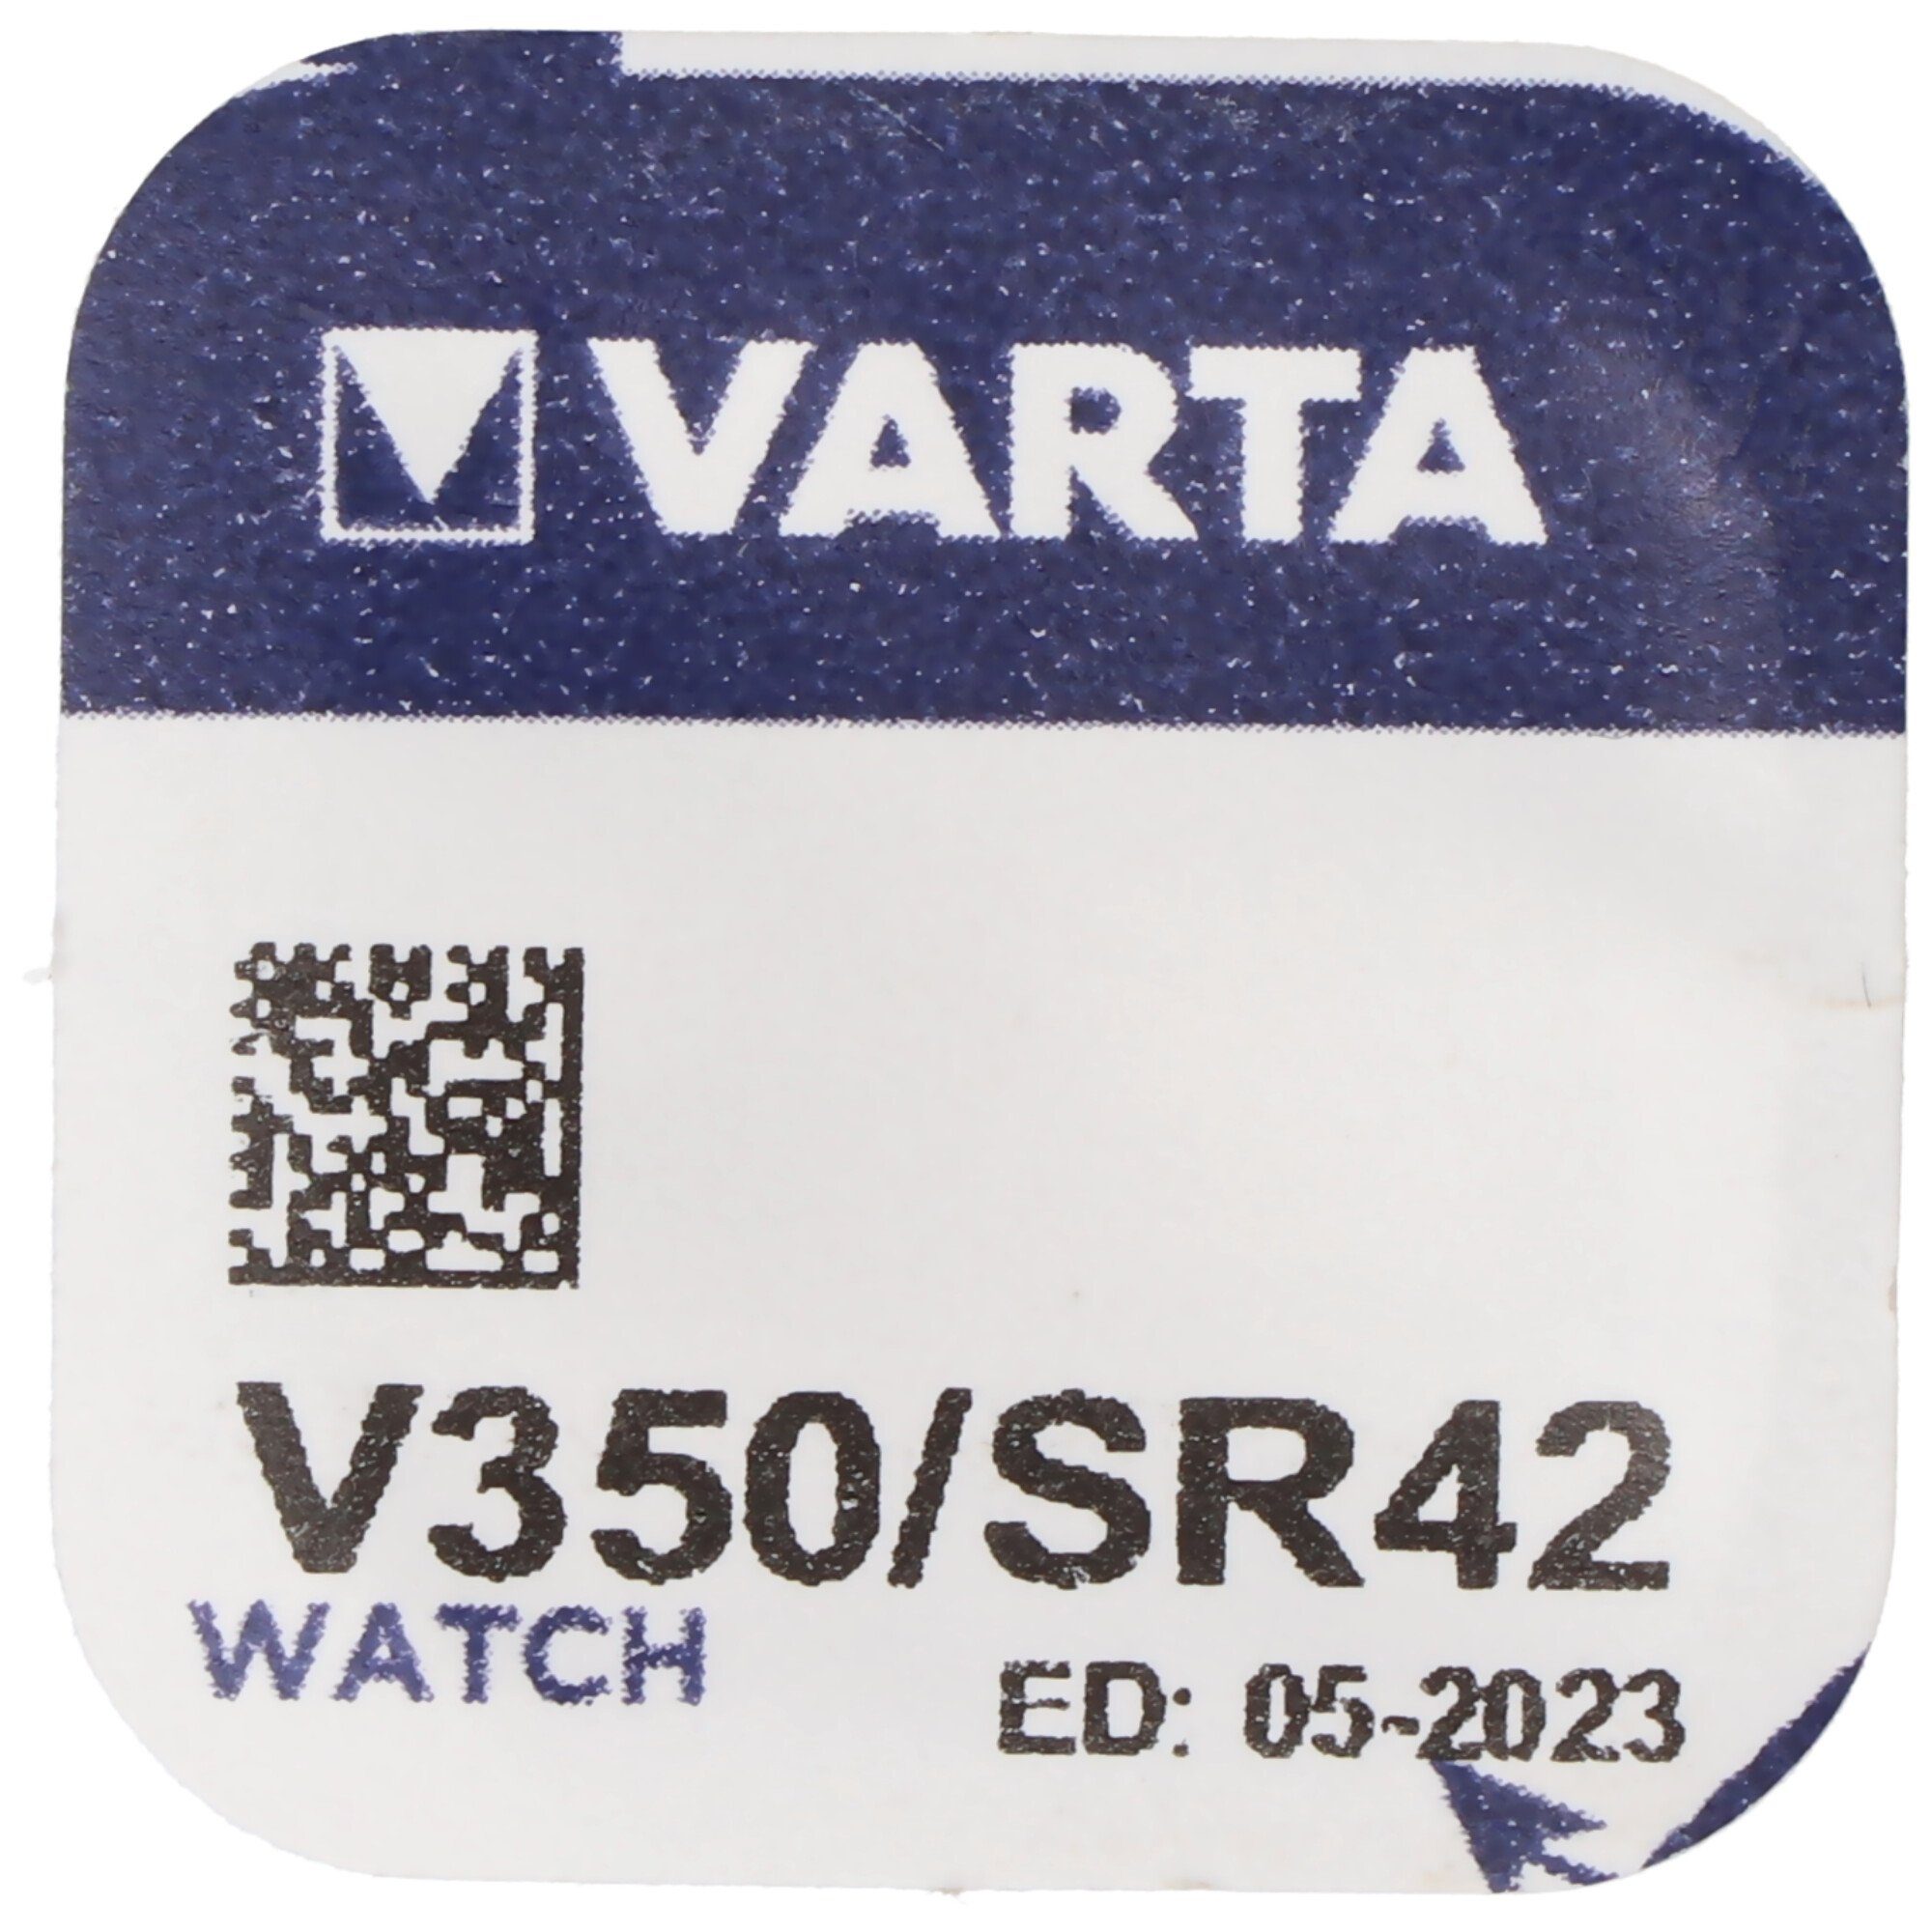 Knopfzelle, 350, für Knopfzelle Uhren (1,6 RW418 SR42, etc. V350, VARTA Varta V)